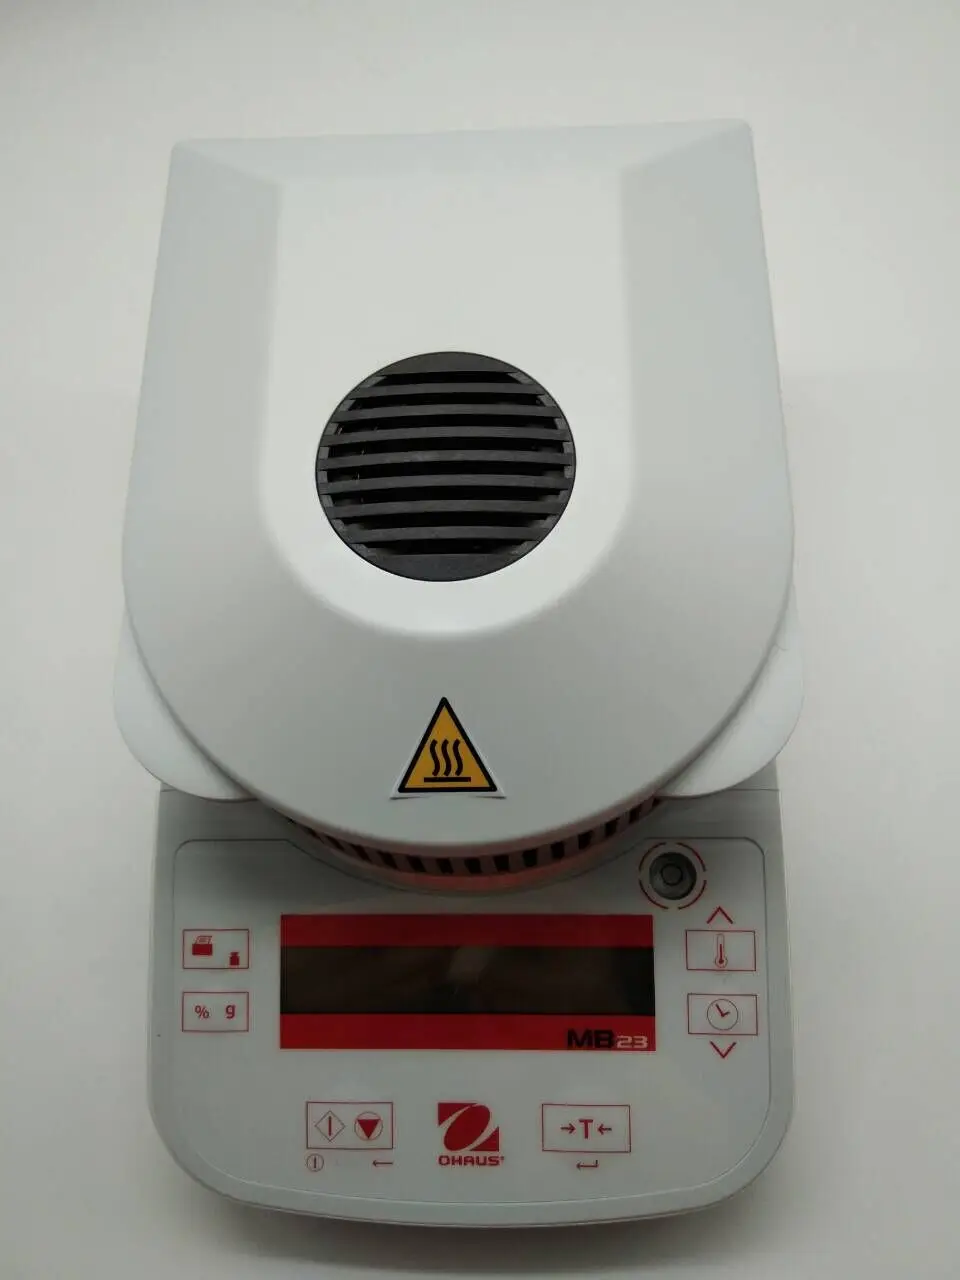 110g Ohaus анализатор влажности MB23 лабораторный Инфракрасный нагревательный анализатор влажности зерна метр RS232